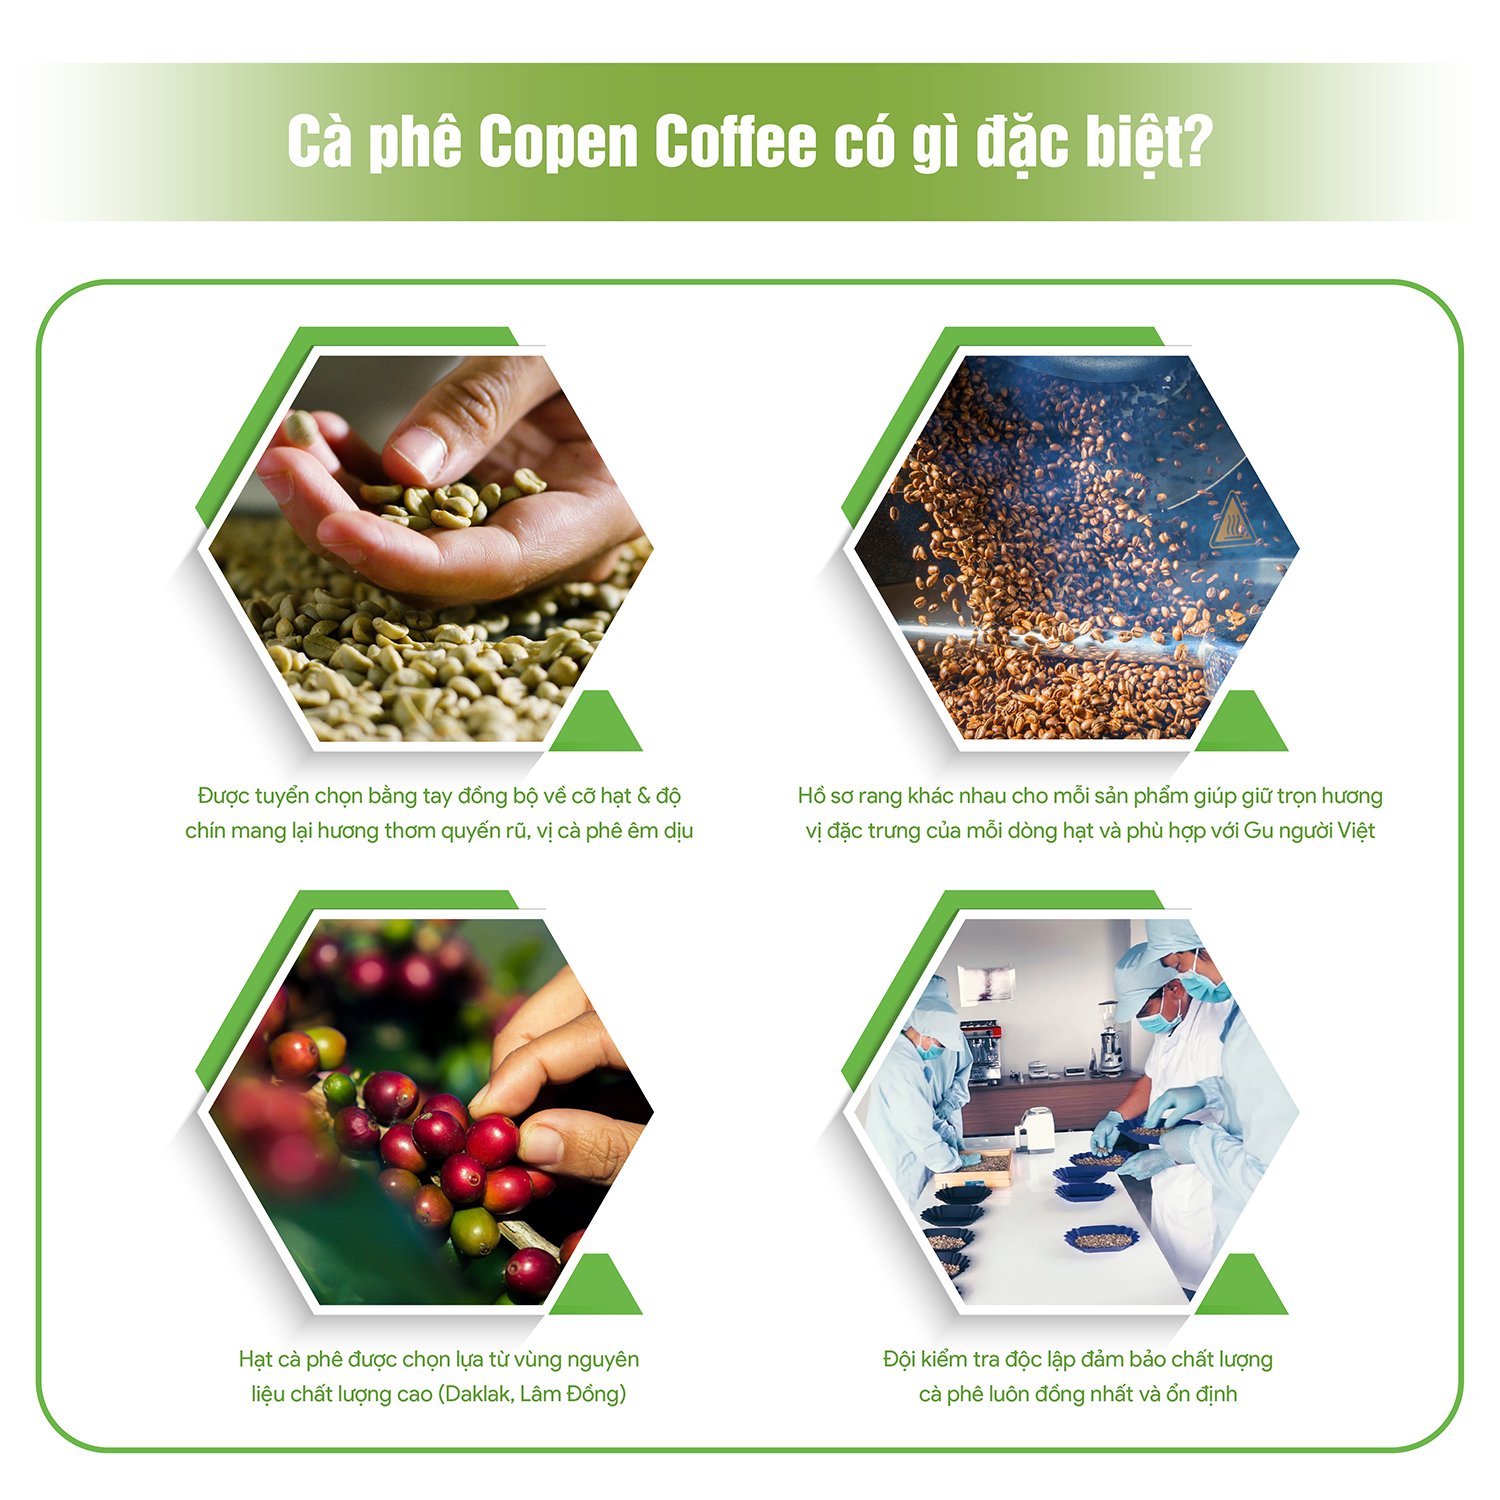 Cà phê Arabica rang mộc nguyên chất - Copen Coffee - Hương vị đắng dịu, hậu vị ngọt - Gói 200g